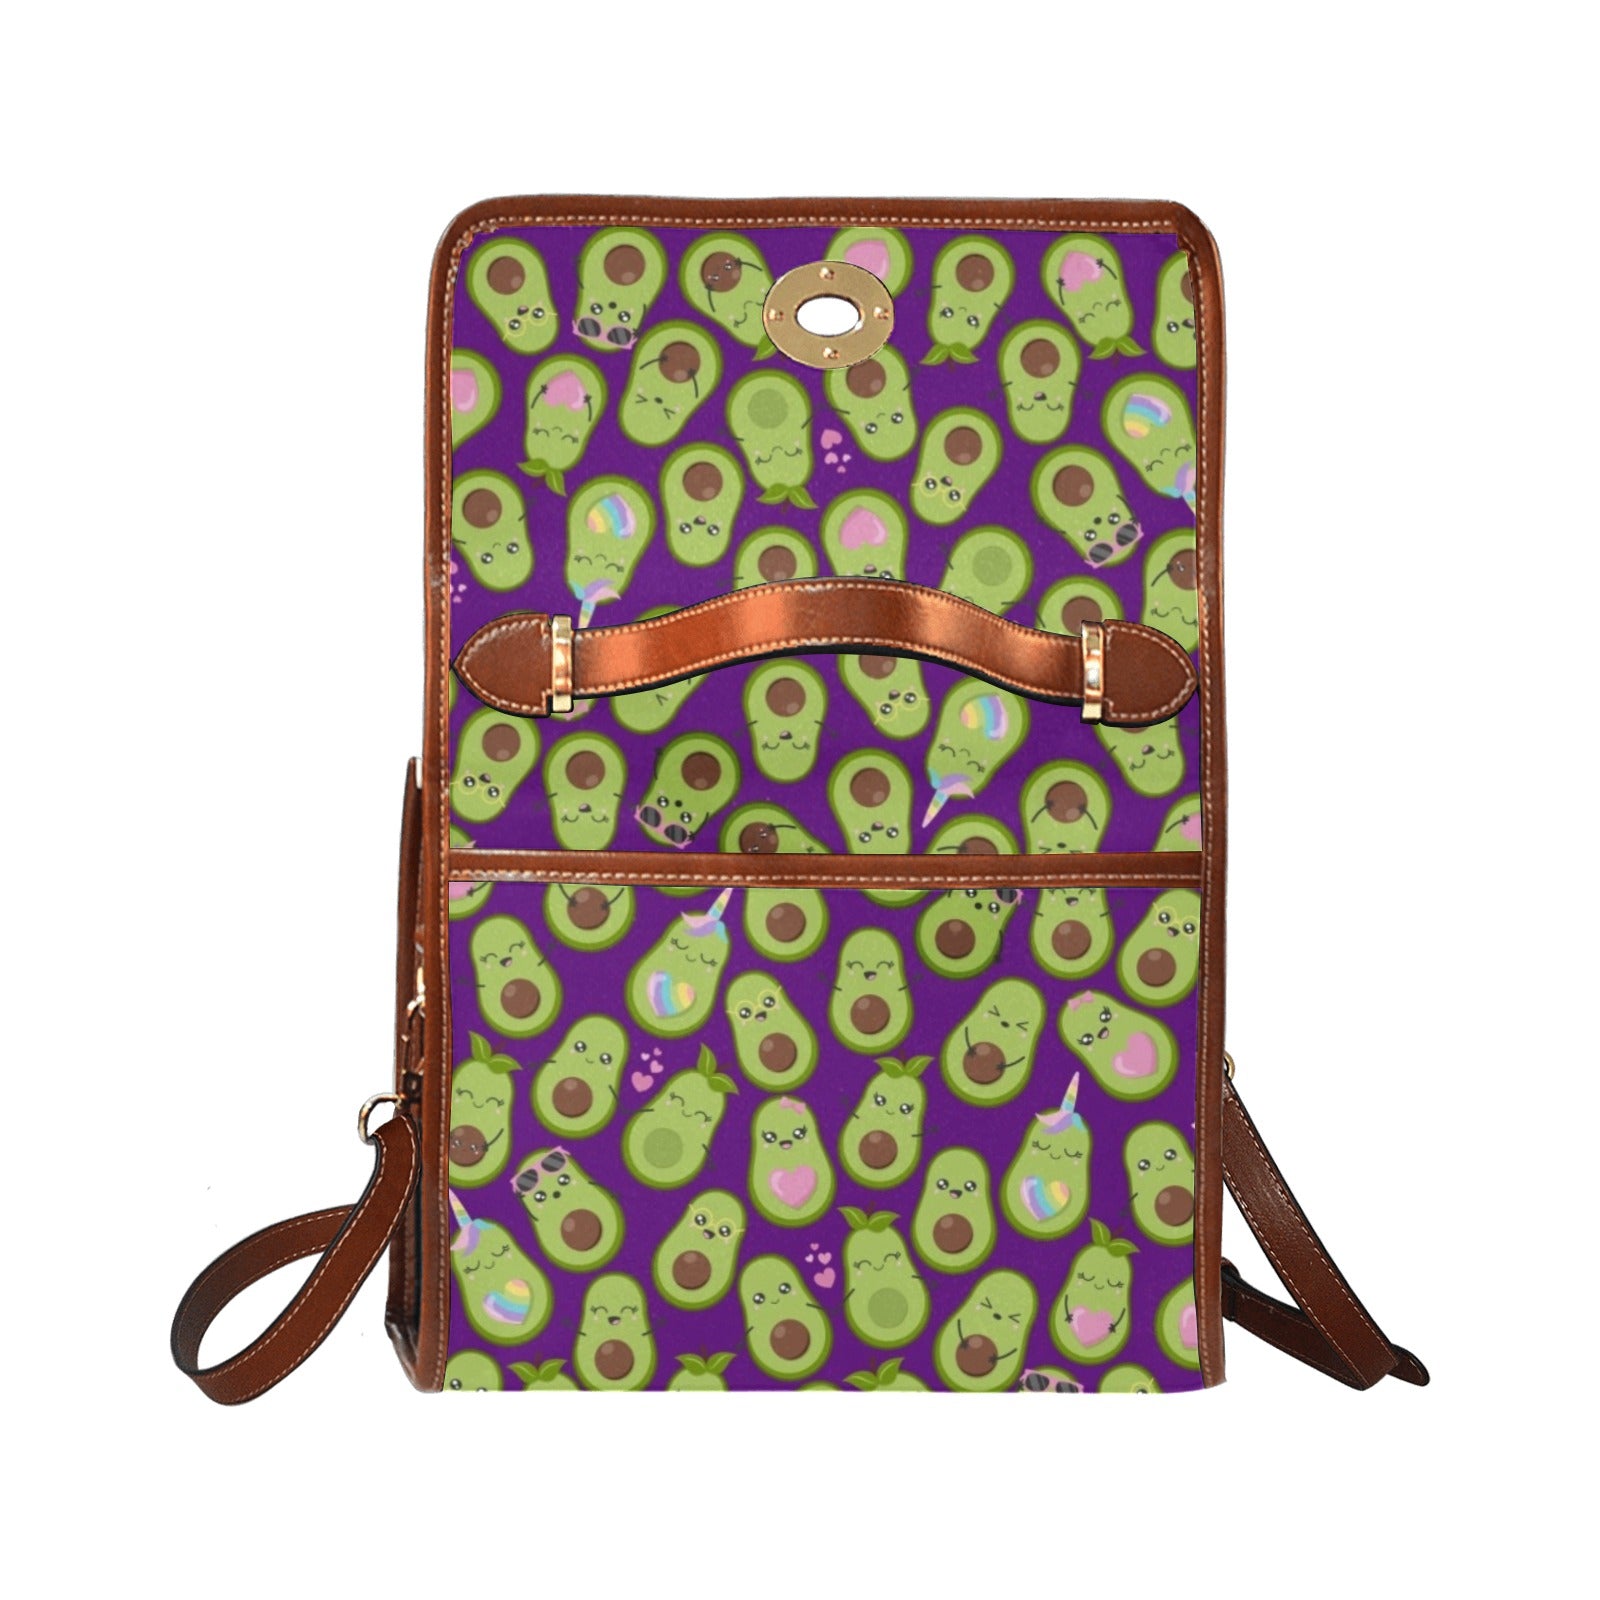 Avocado - Waterproof Canvas Handbag